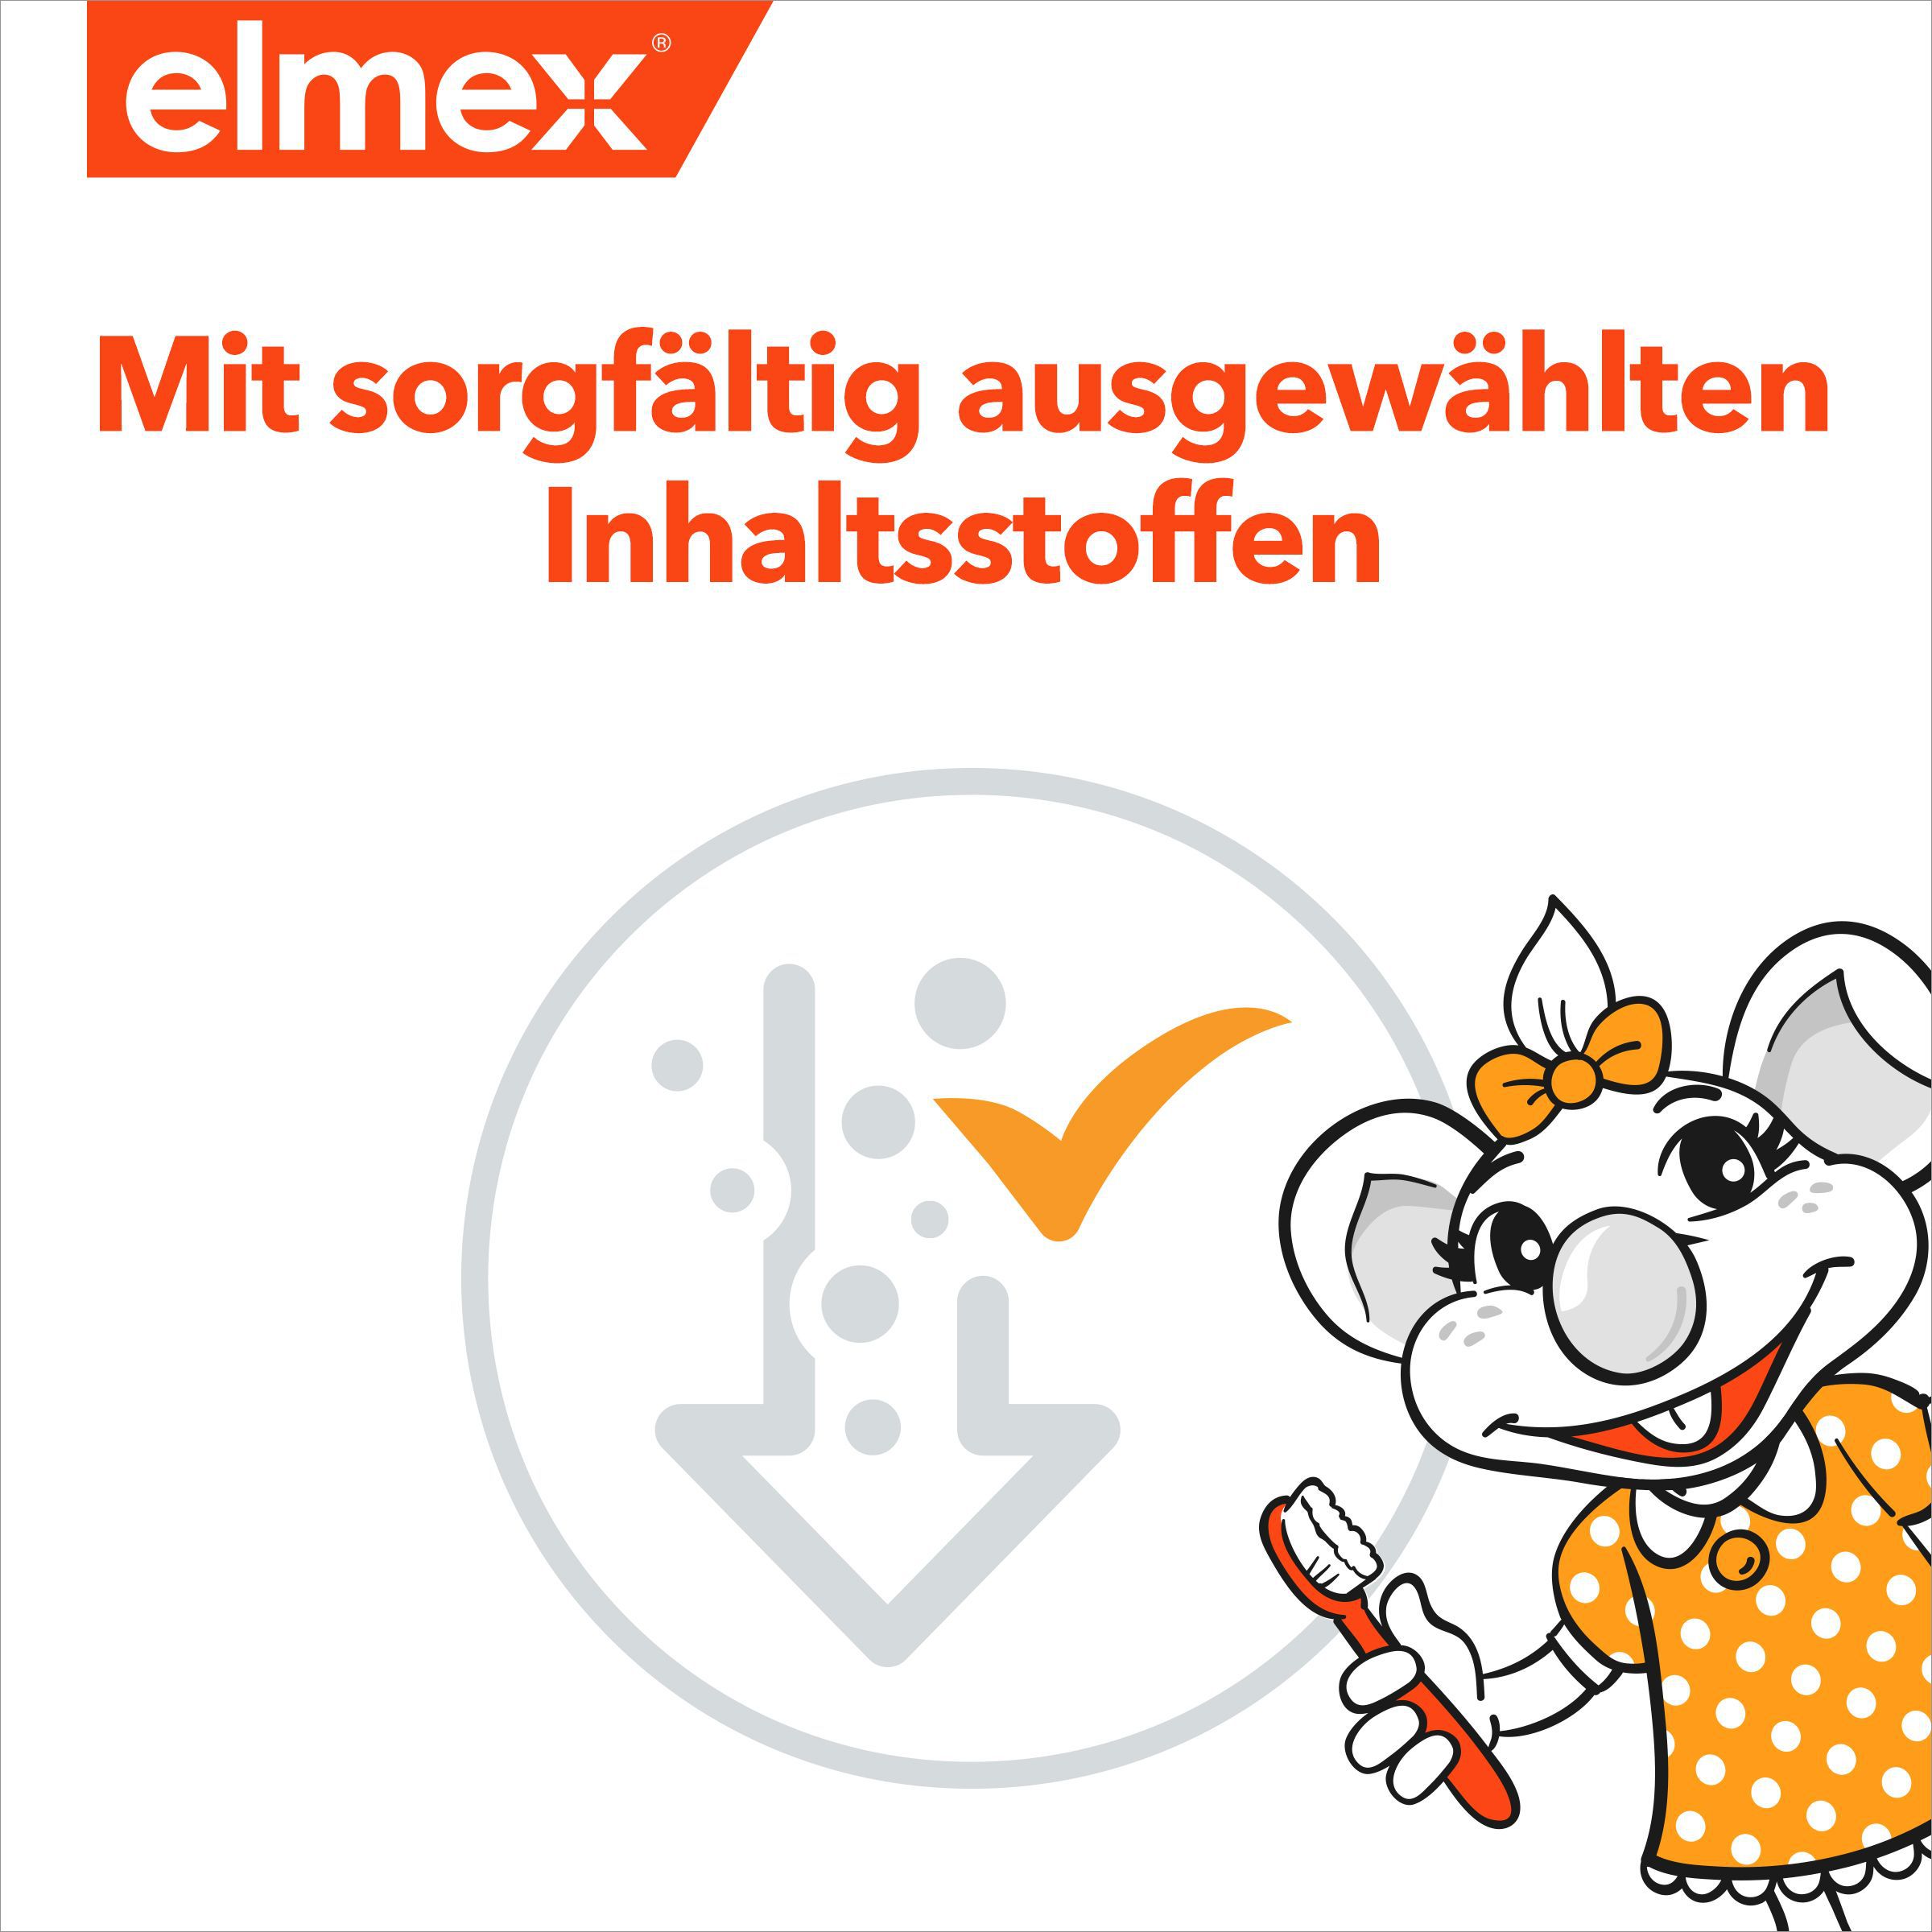 elmex Kinder-Zahnpasta zum Schutz der Milchzähne gegen Karies duo Pack